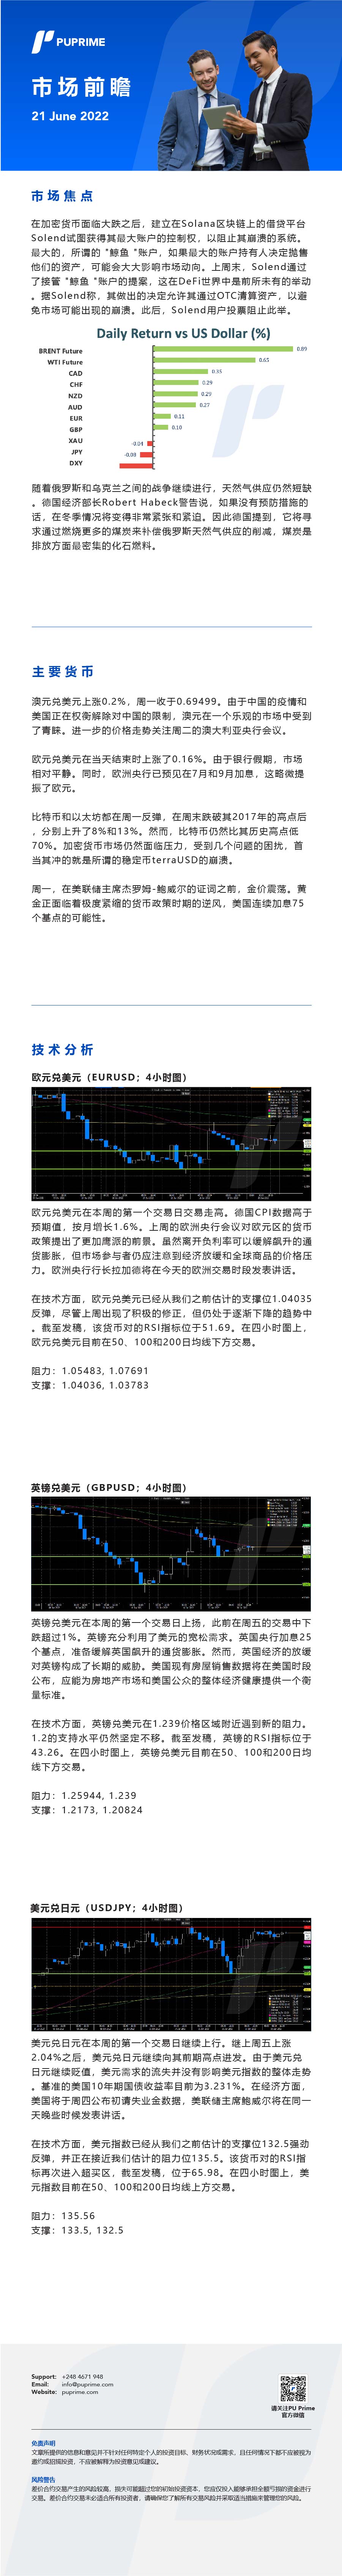 21062022 Daily Market Analysis__CHN.jpg